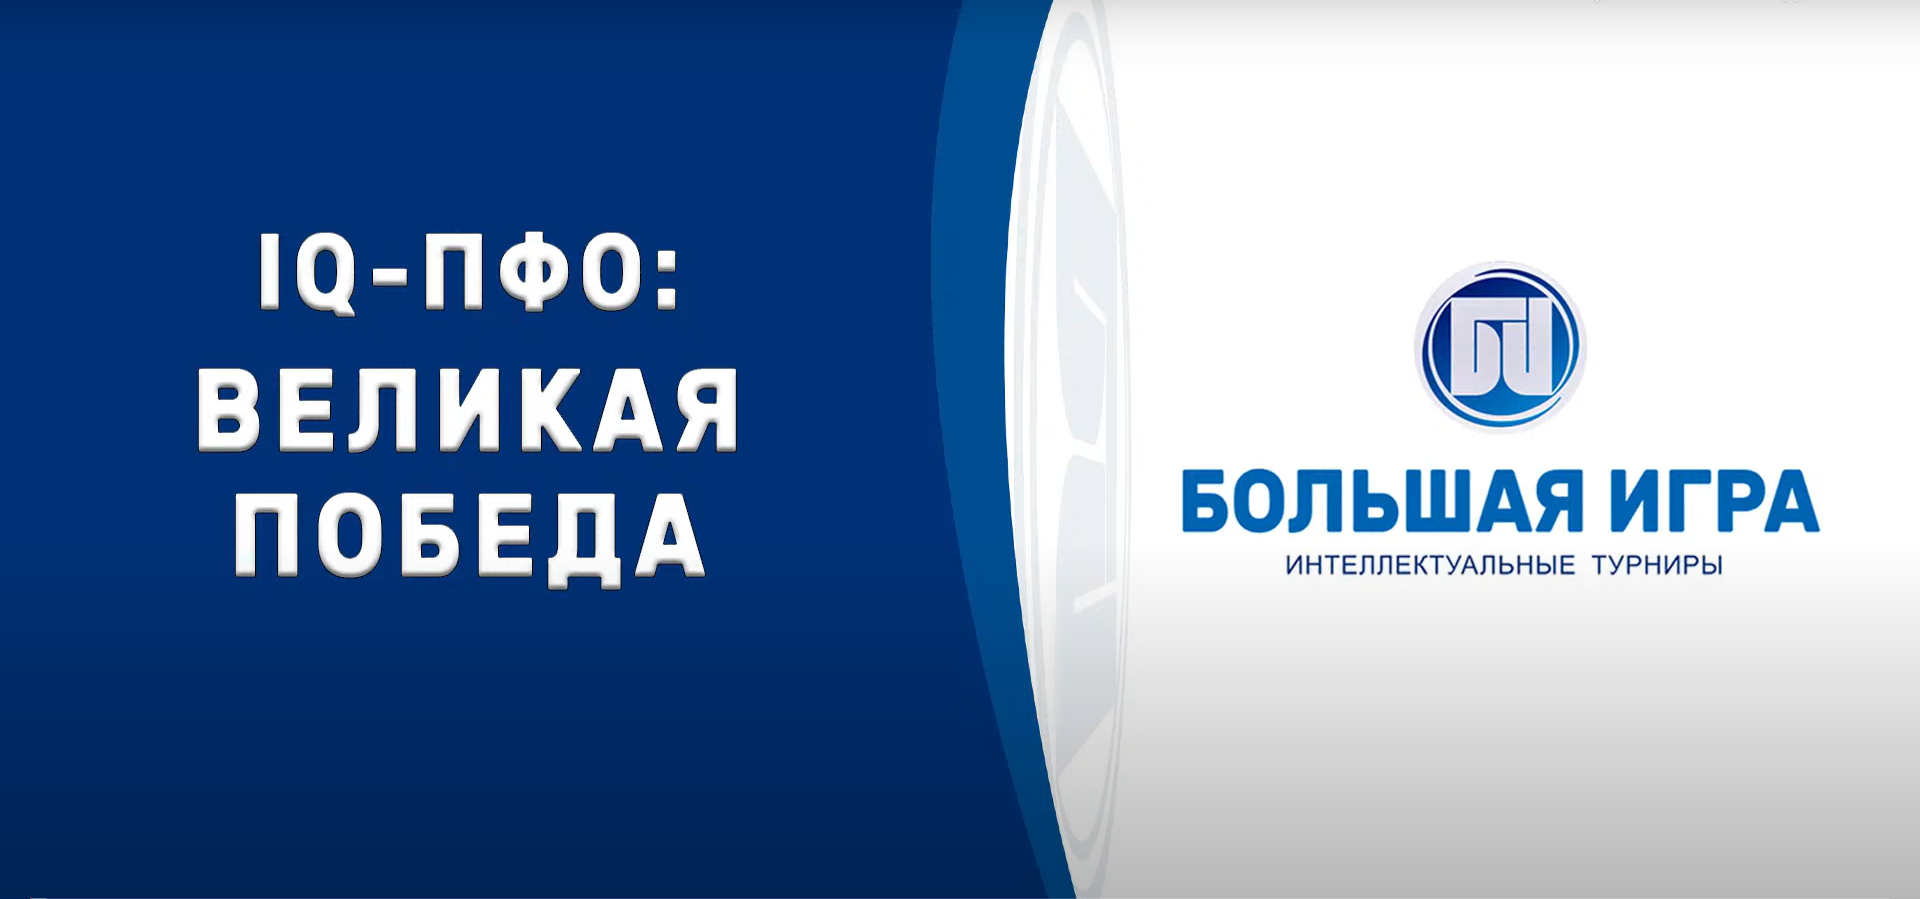 Команда из Йошкар-Олы заняла 3 место в интеллектуальной игре ПФО